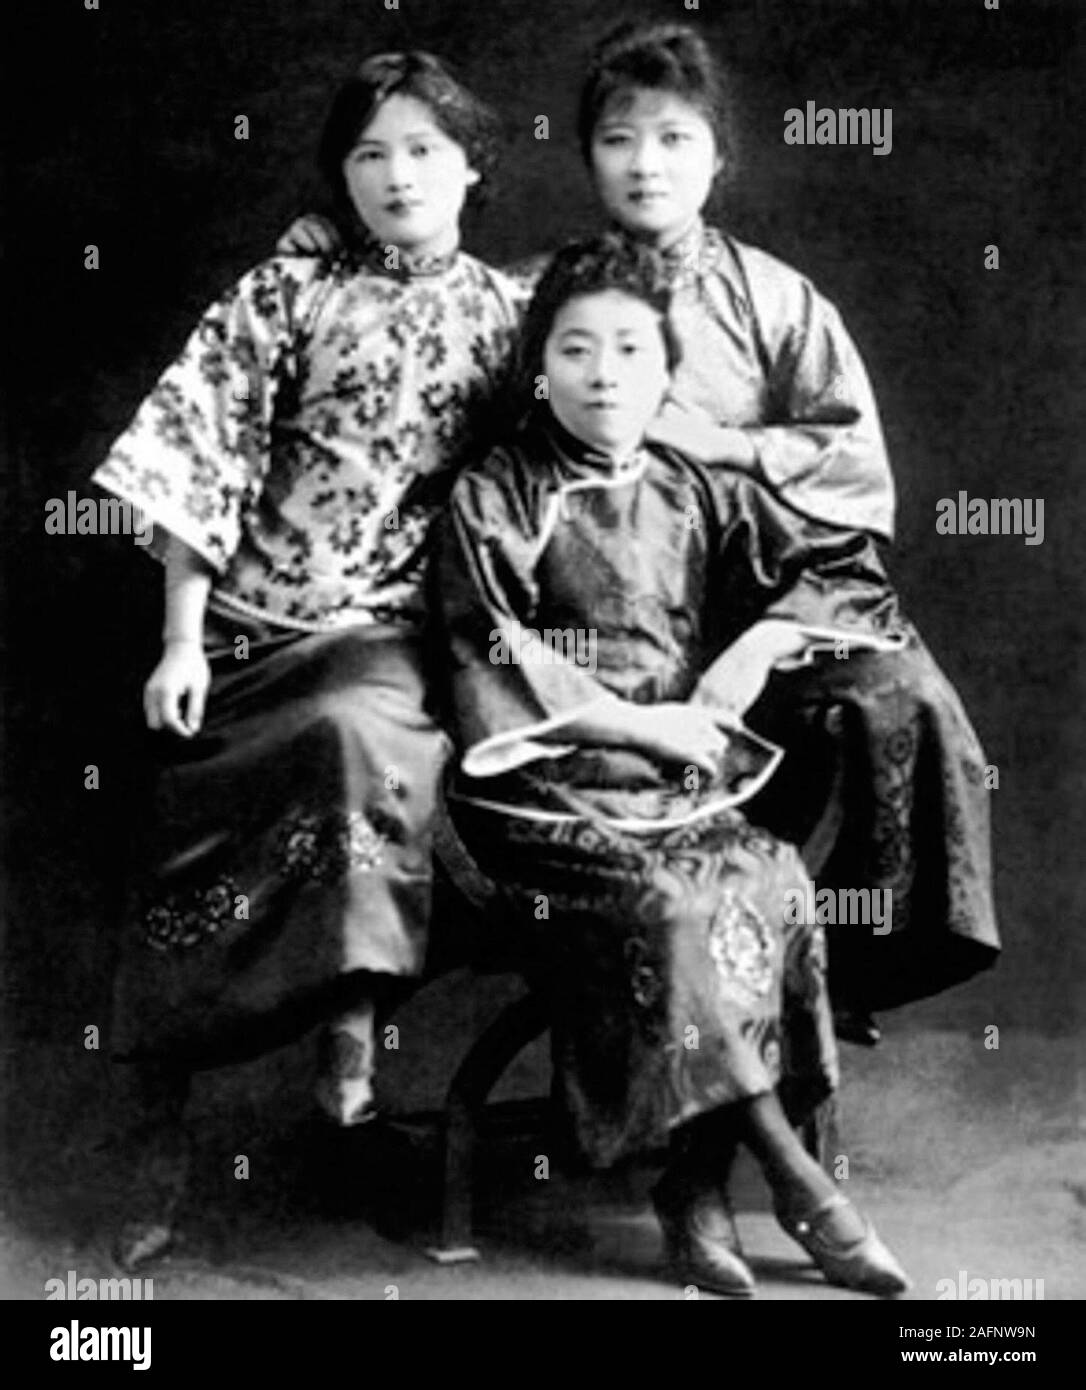 Le tre sorelle Soong: Soong Ching Ling a sinistra, Soong Ai Ling in medio e Soong Mei Ling a destra. Il Soong sorelle erano tre di Shanghai le donne cinesi che sono stati, insieme ai loro mariti, tra la Cina del politico più significativo nelle figure degli inizi del XX secolo Foto Stock